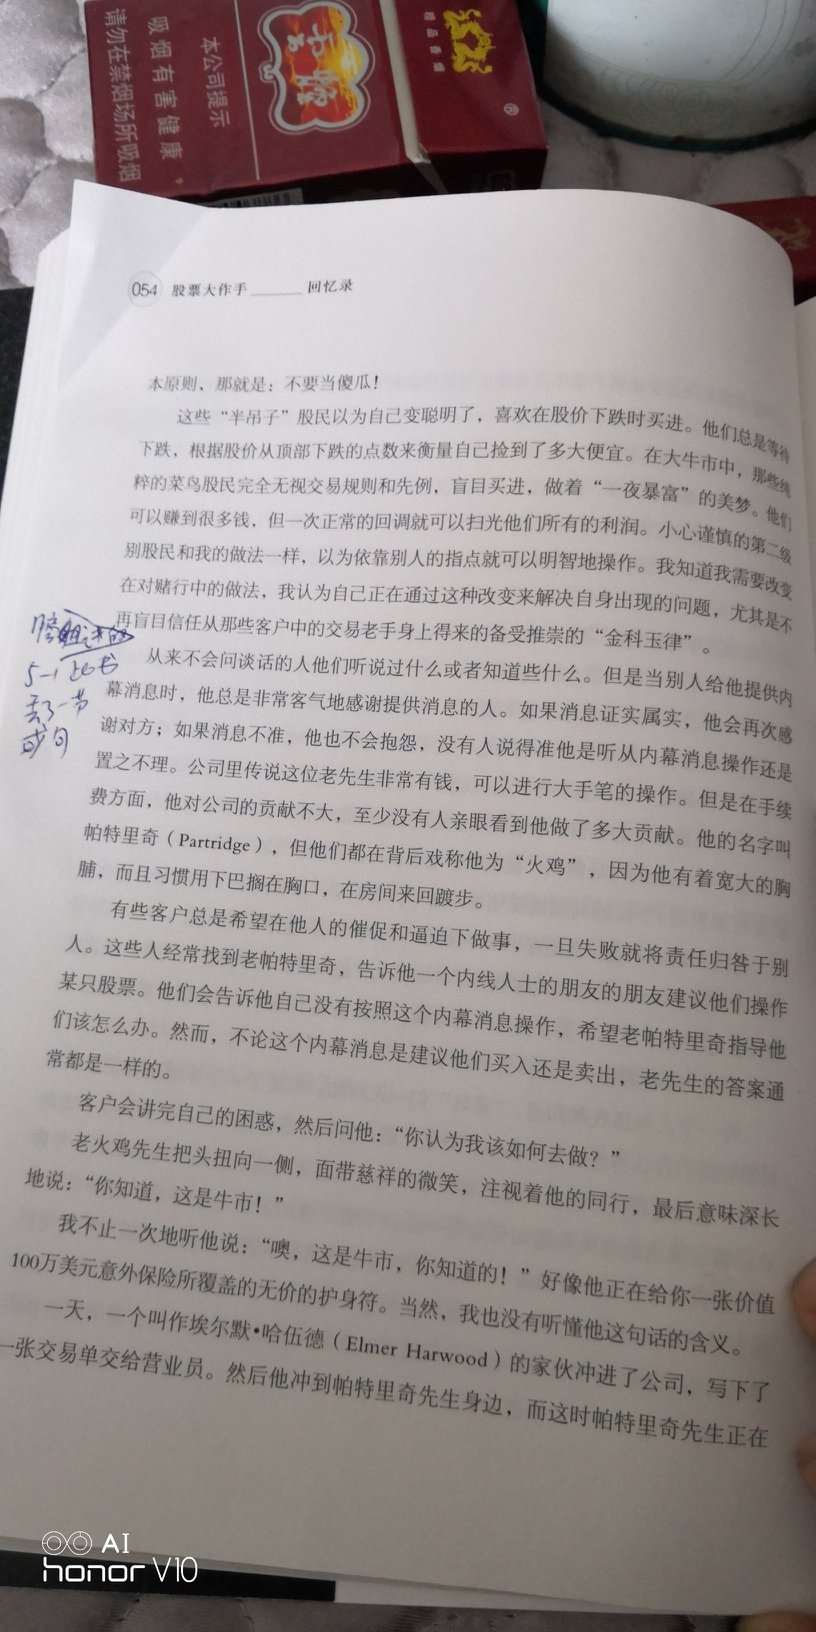 这本书的翻译水瓶相比丁圣元的要高出很多，是用中国人说中国话的方式在翻译，但是尽然还有丢失段落或者一些句子，导致读起来莫名其妙不连贯，我刚刚读到，第五章的第54页，其中第三段的开头之前应该是丢了好几句话，显得很唐突的不知从哪说起似的，我是边听录音边看书。虽然网友的录音丁圣元版本翻译水平差一些，但前后顺序还对，所以此书智能给2?。